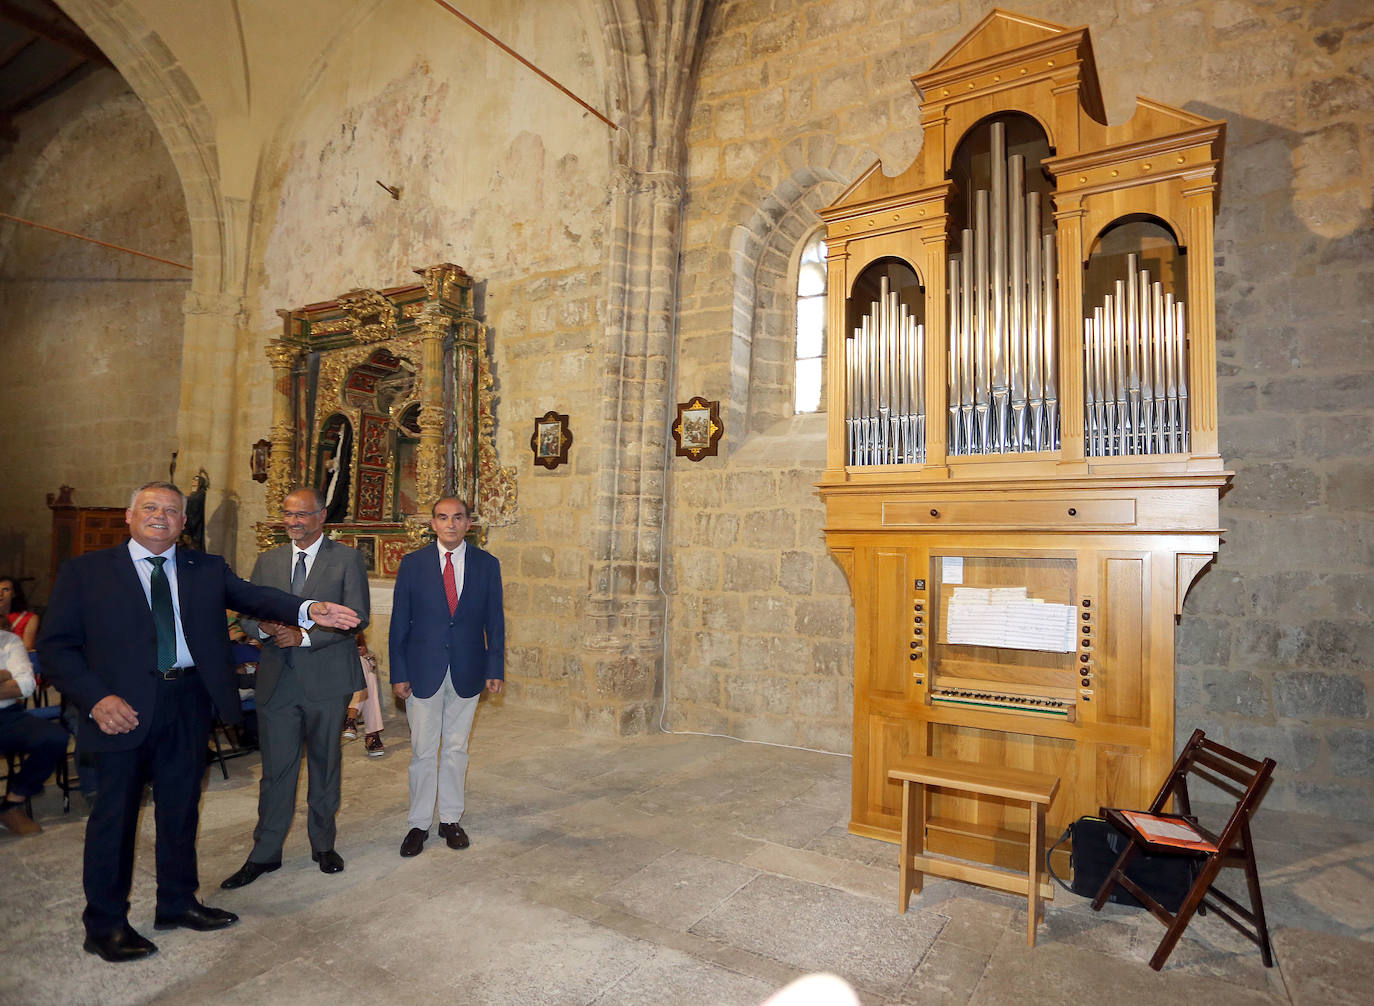 El alcalde de Castrillo Mota de Judíos, Lorenzo Rodríguez, señala el nuevo órgano de la iglesia.